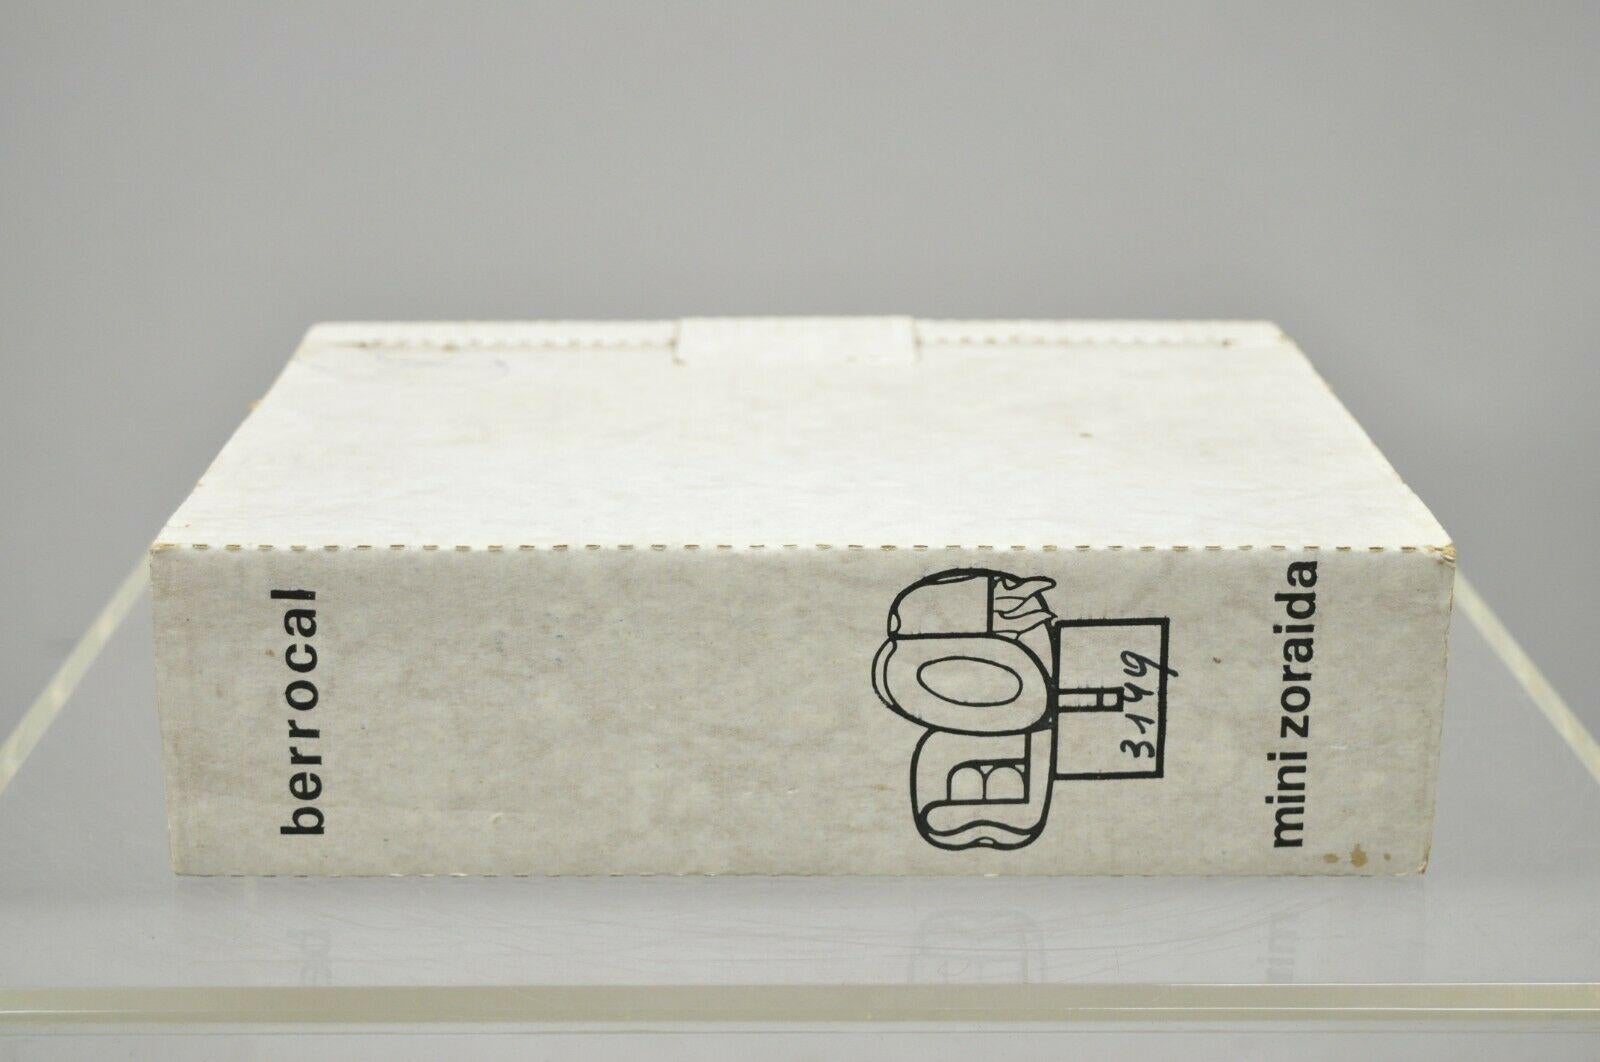 Miguel Berrocal La Mini Zoraida Nickel Plated Puzzle Sculpture Box and Book For Sale 1